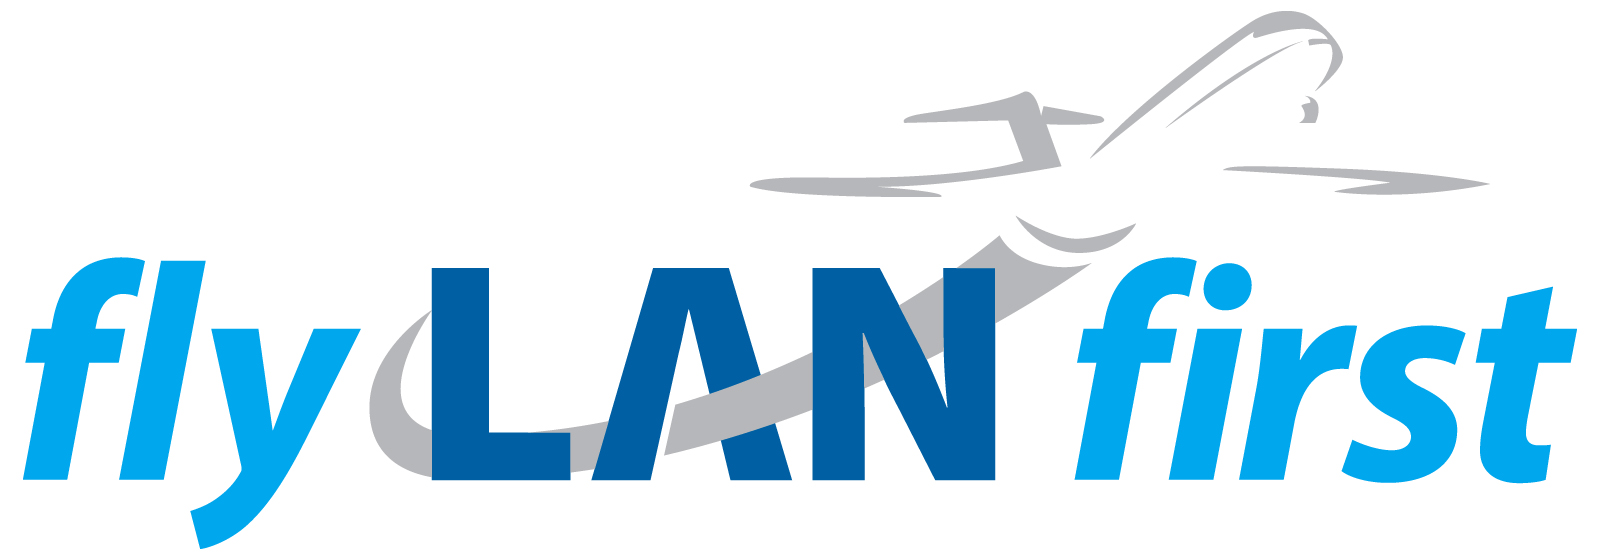 fly lan first logo